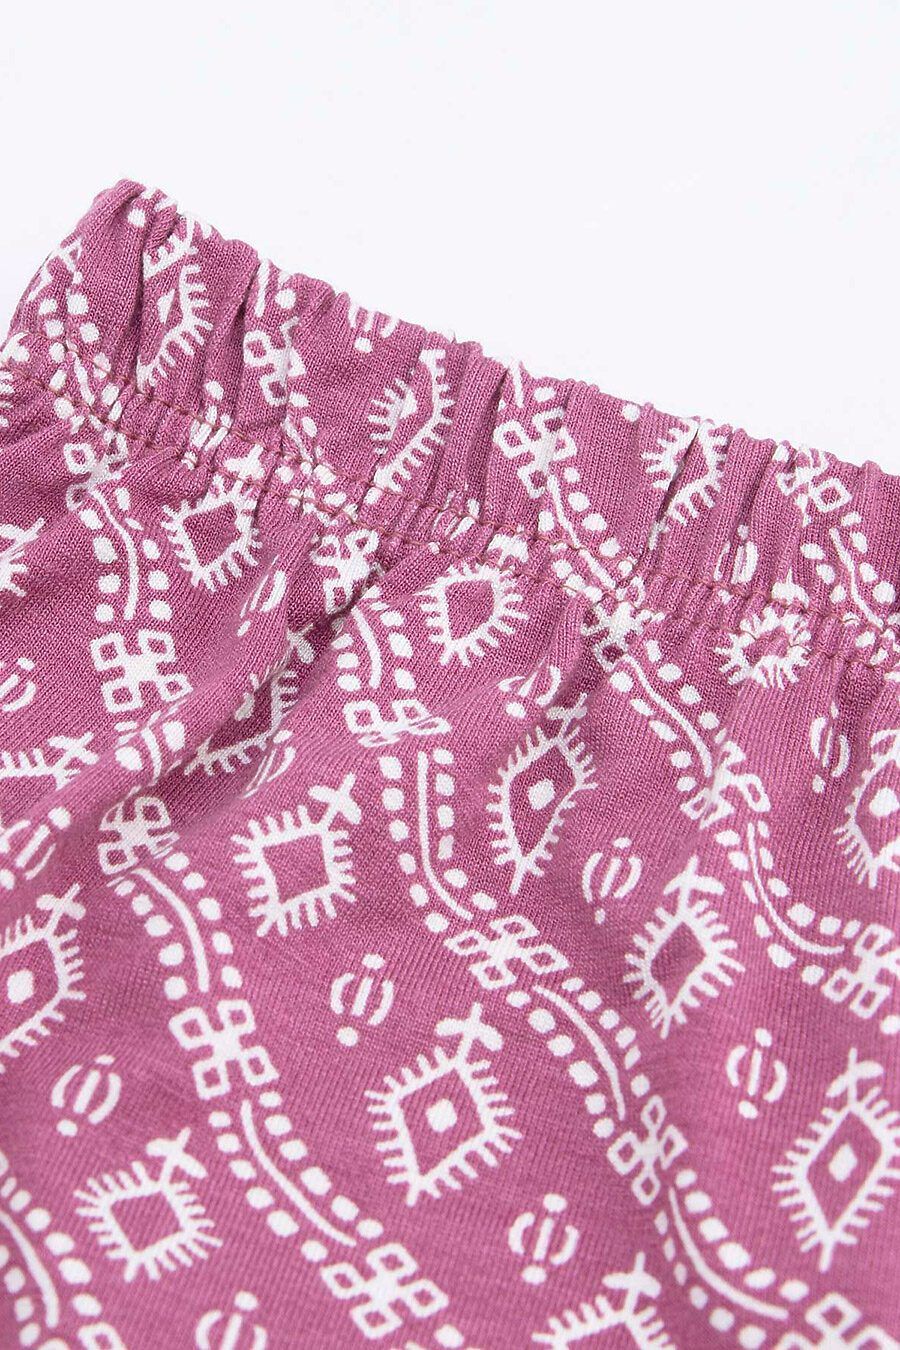 Пижама для женщин BOSSA NOVA 708544 купить оптом от производителя. Совместная покупка женской одежды в OptMoyo